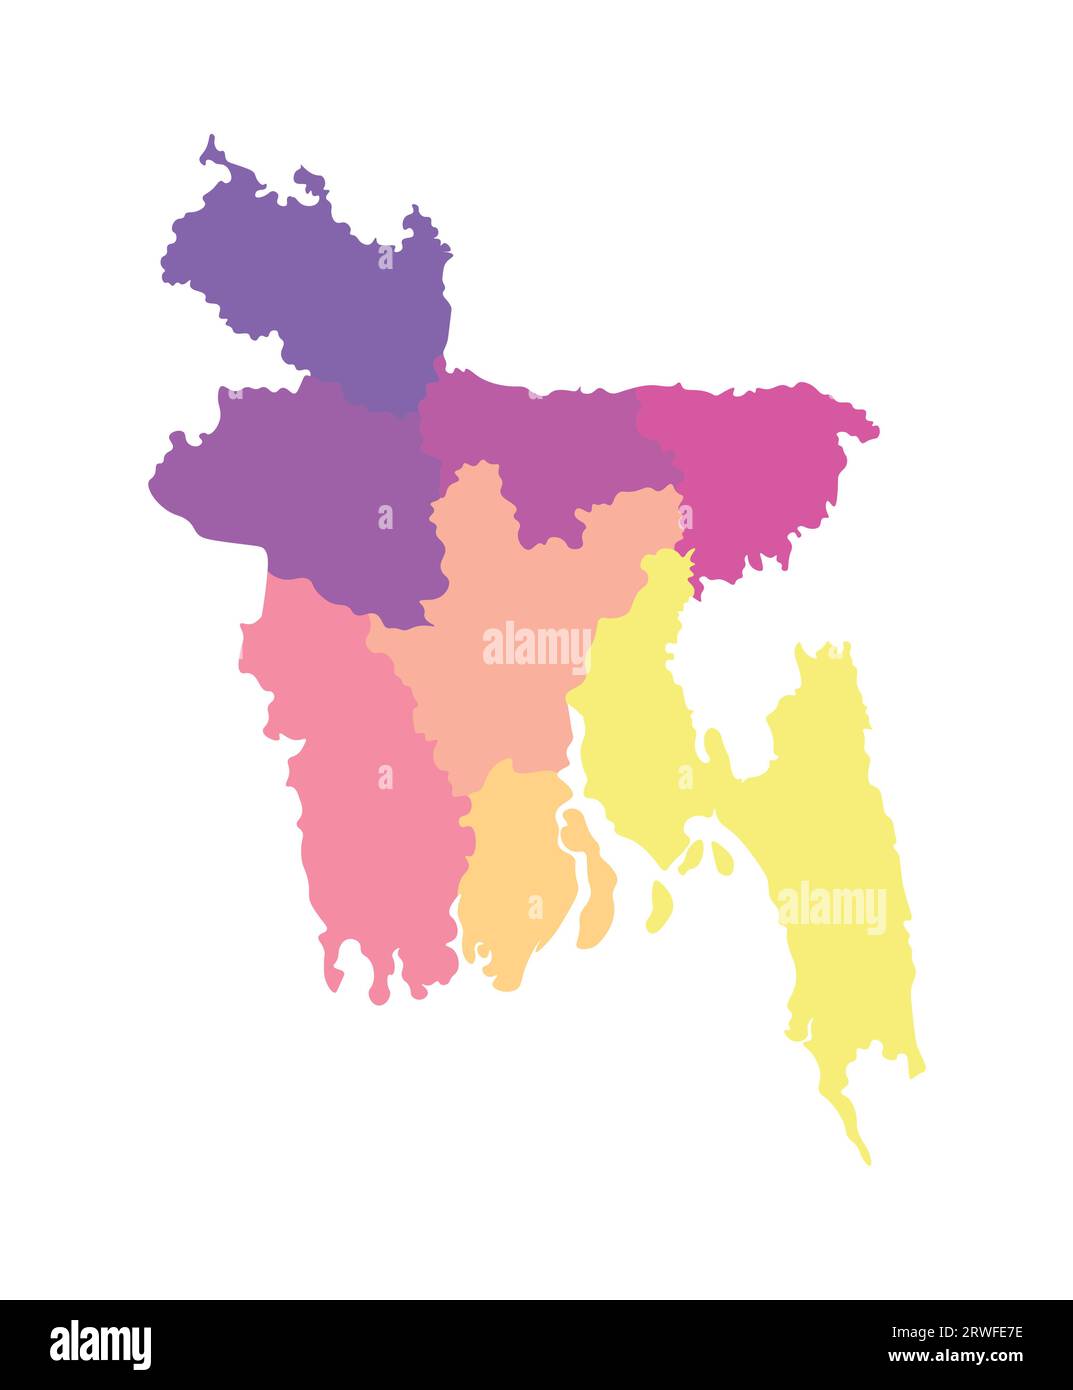 Vektorisolierte Darstellung einer vereinfachten Verwaltungskarte von Bangladesch. Grenzen der Regionen. Mehrfarbige Silhouetten. Stock Vektor